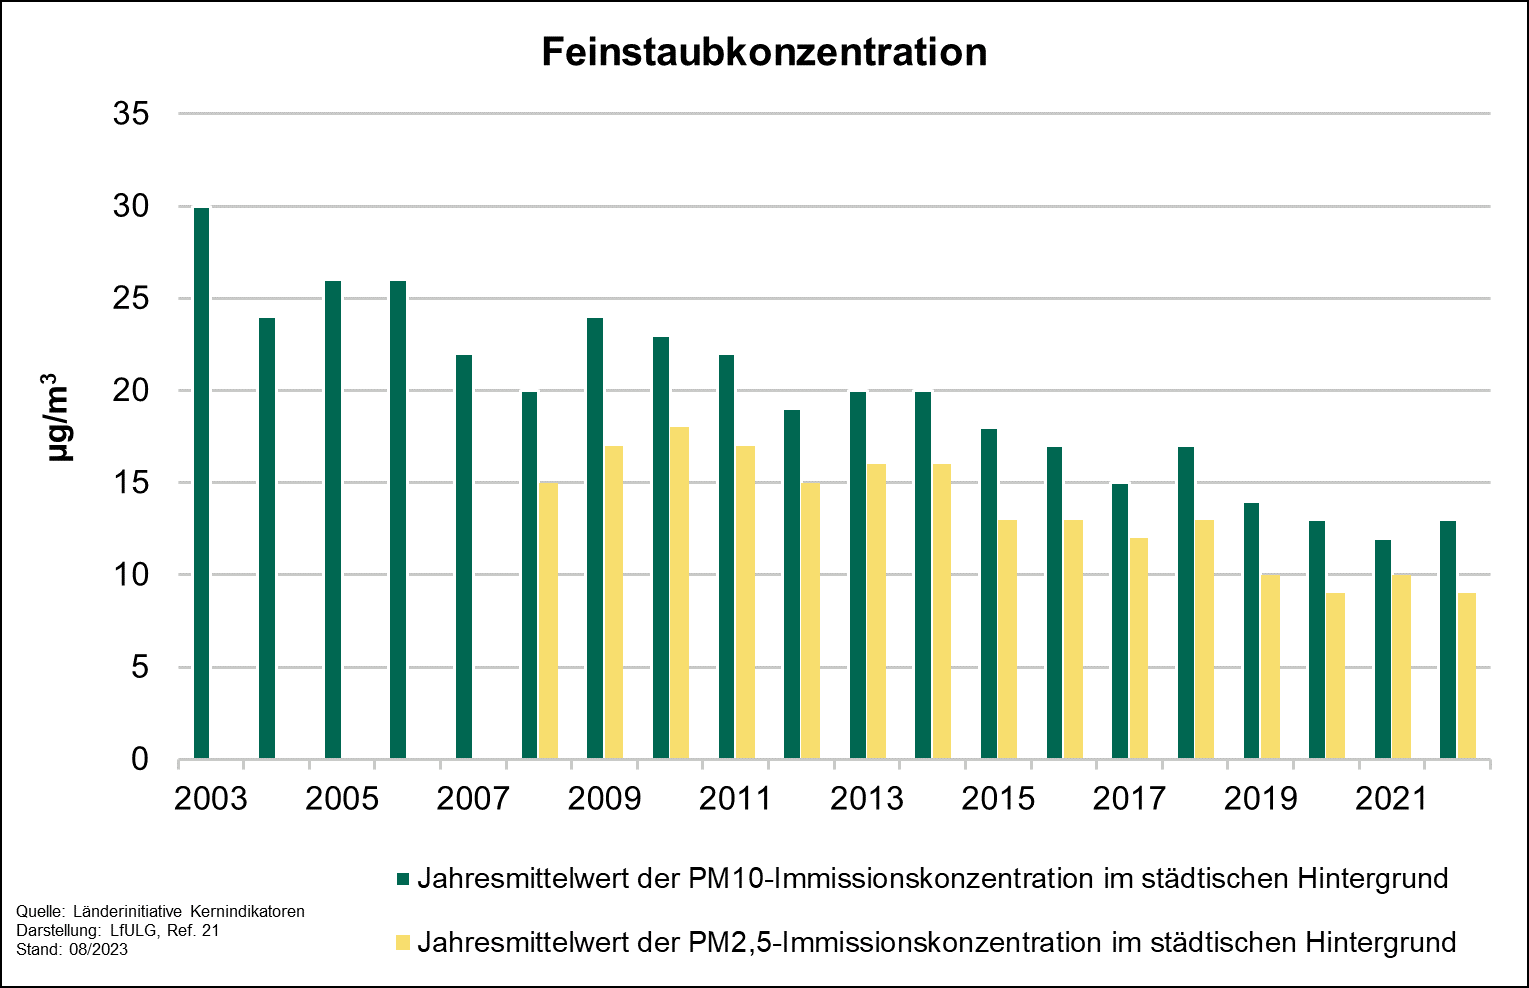 Die Grafik zeigt die Entwicklung des Indikators Feinstaubkonzentration. Der Parameter Jahresmittelwert der PM10-Immissionskonzentration im städtischen Hintergrund wird für die Jahre 2003 bis 2022 dargestellt. 